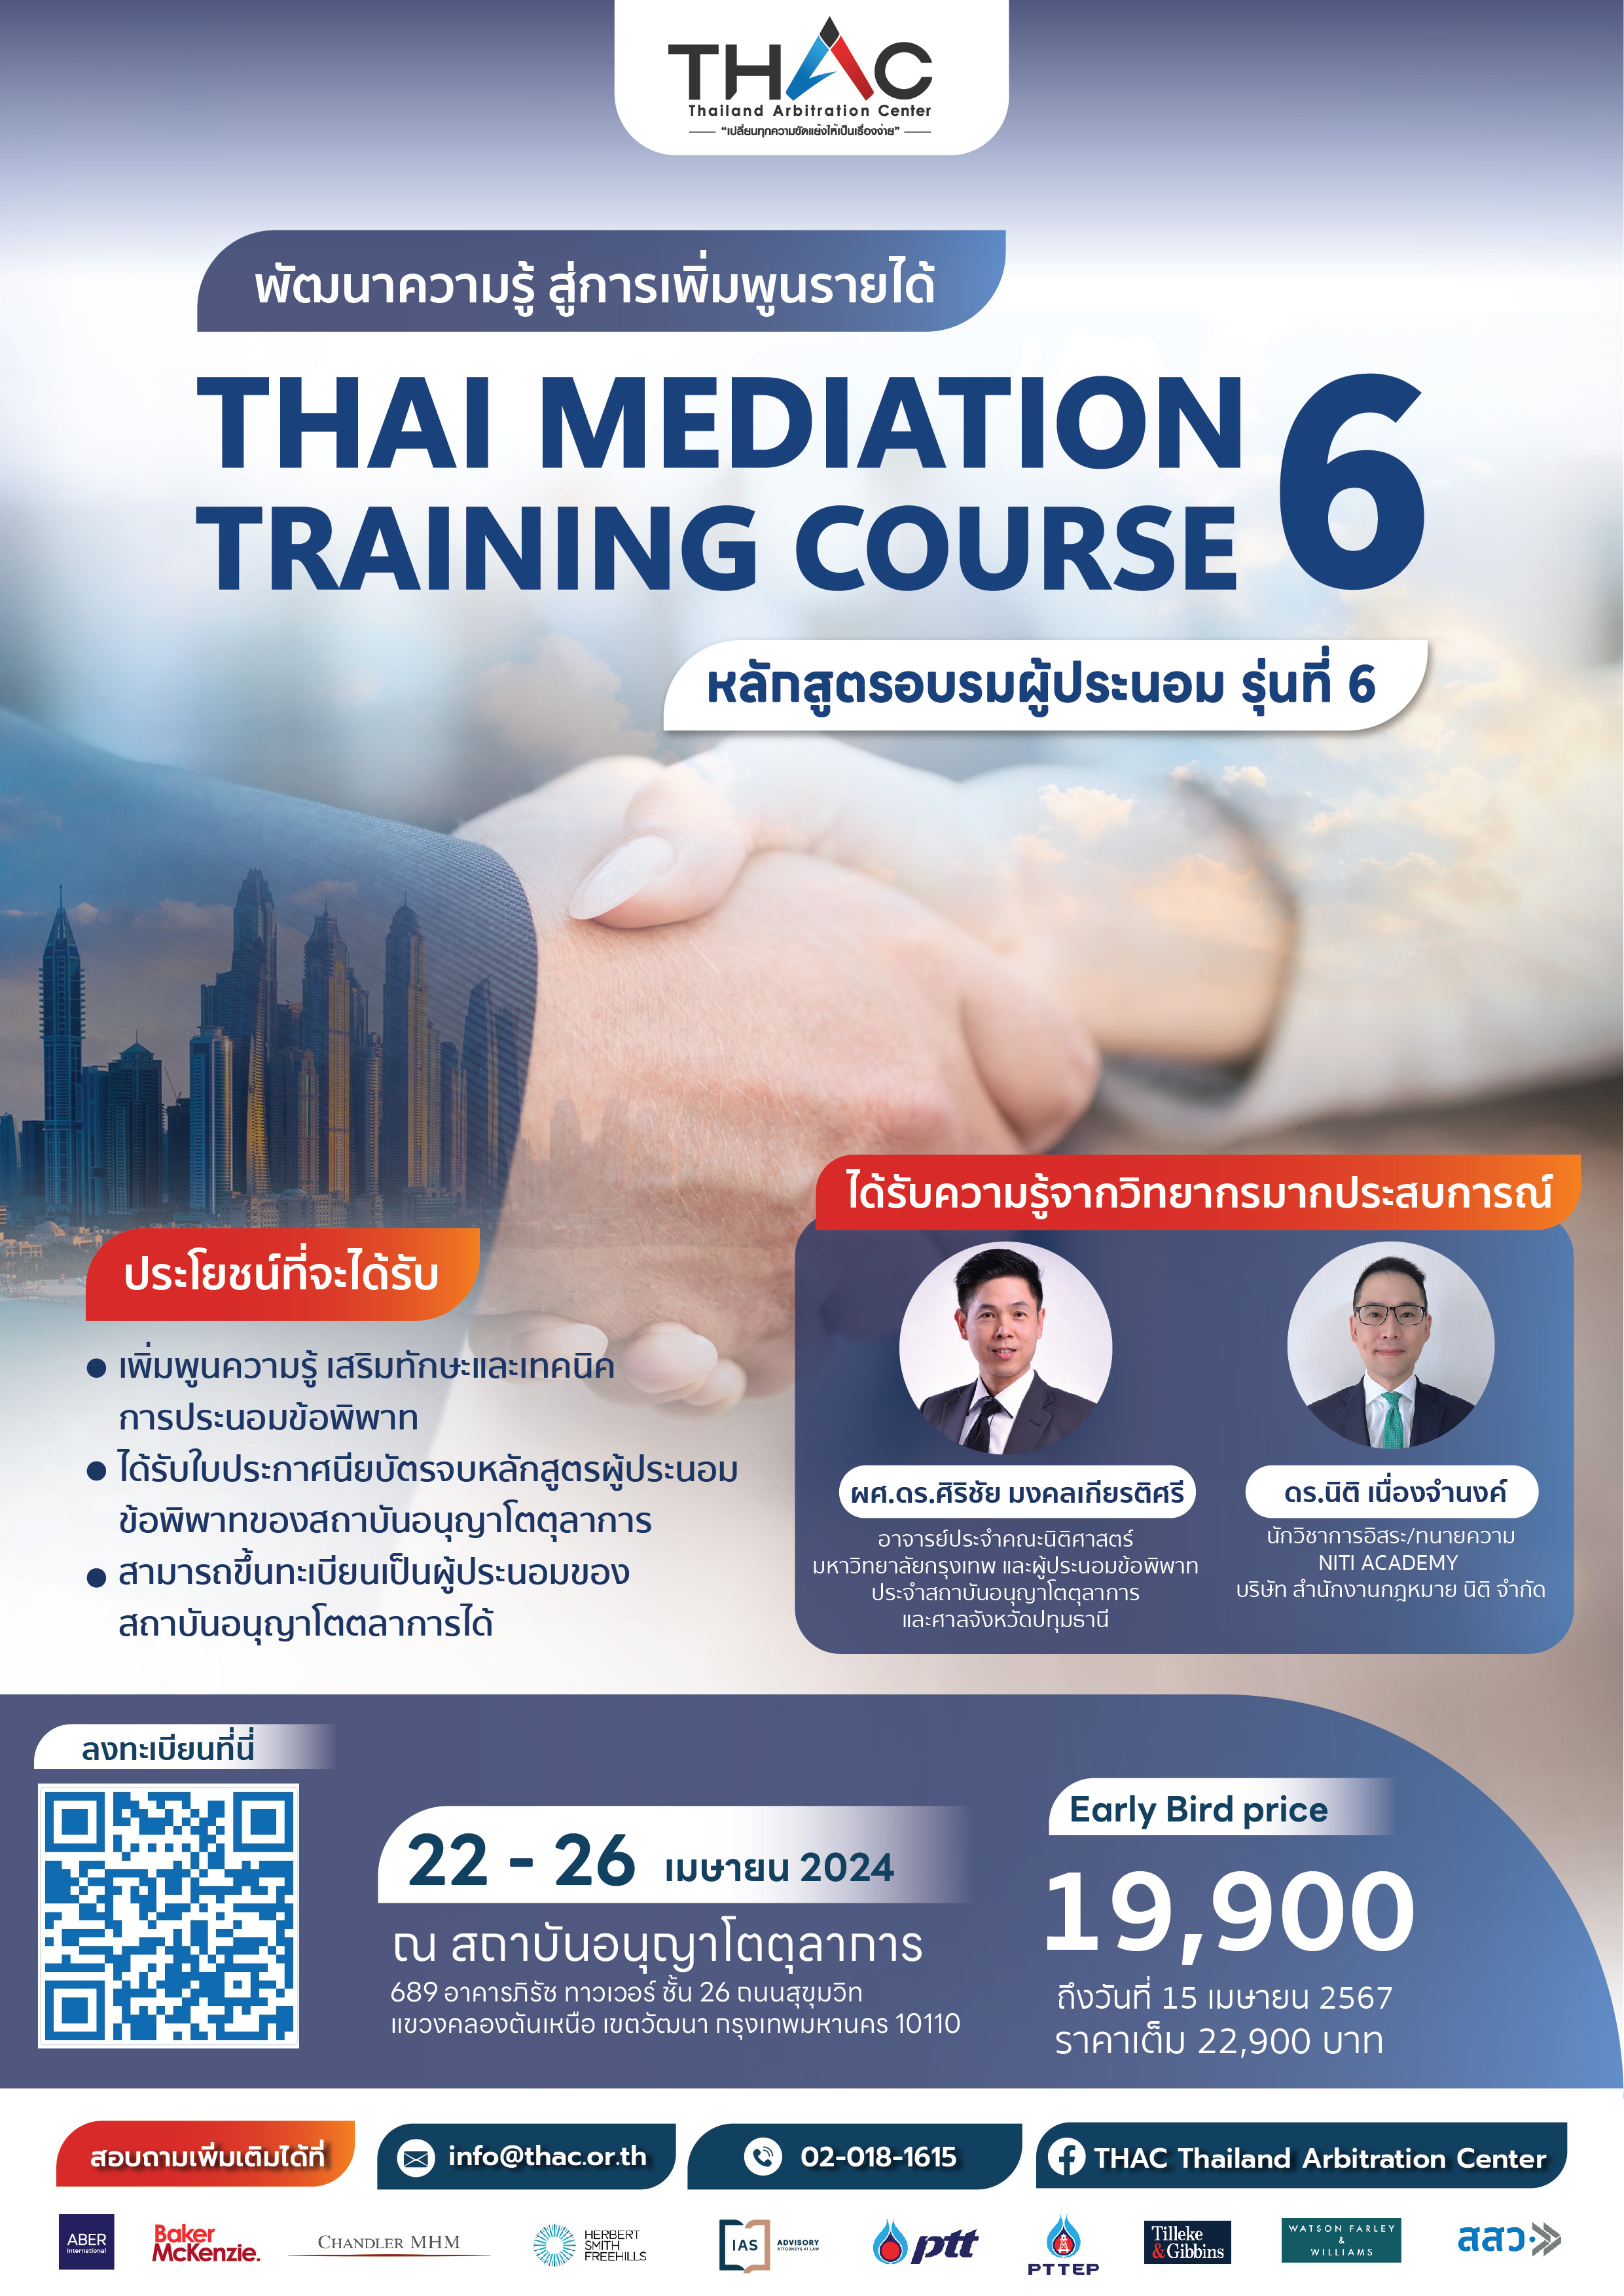 หลักสูตรอบรมผู้ประนอม รุ่นที่ 6 (Thai Mediation Training Course 6)